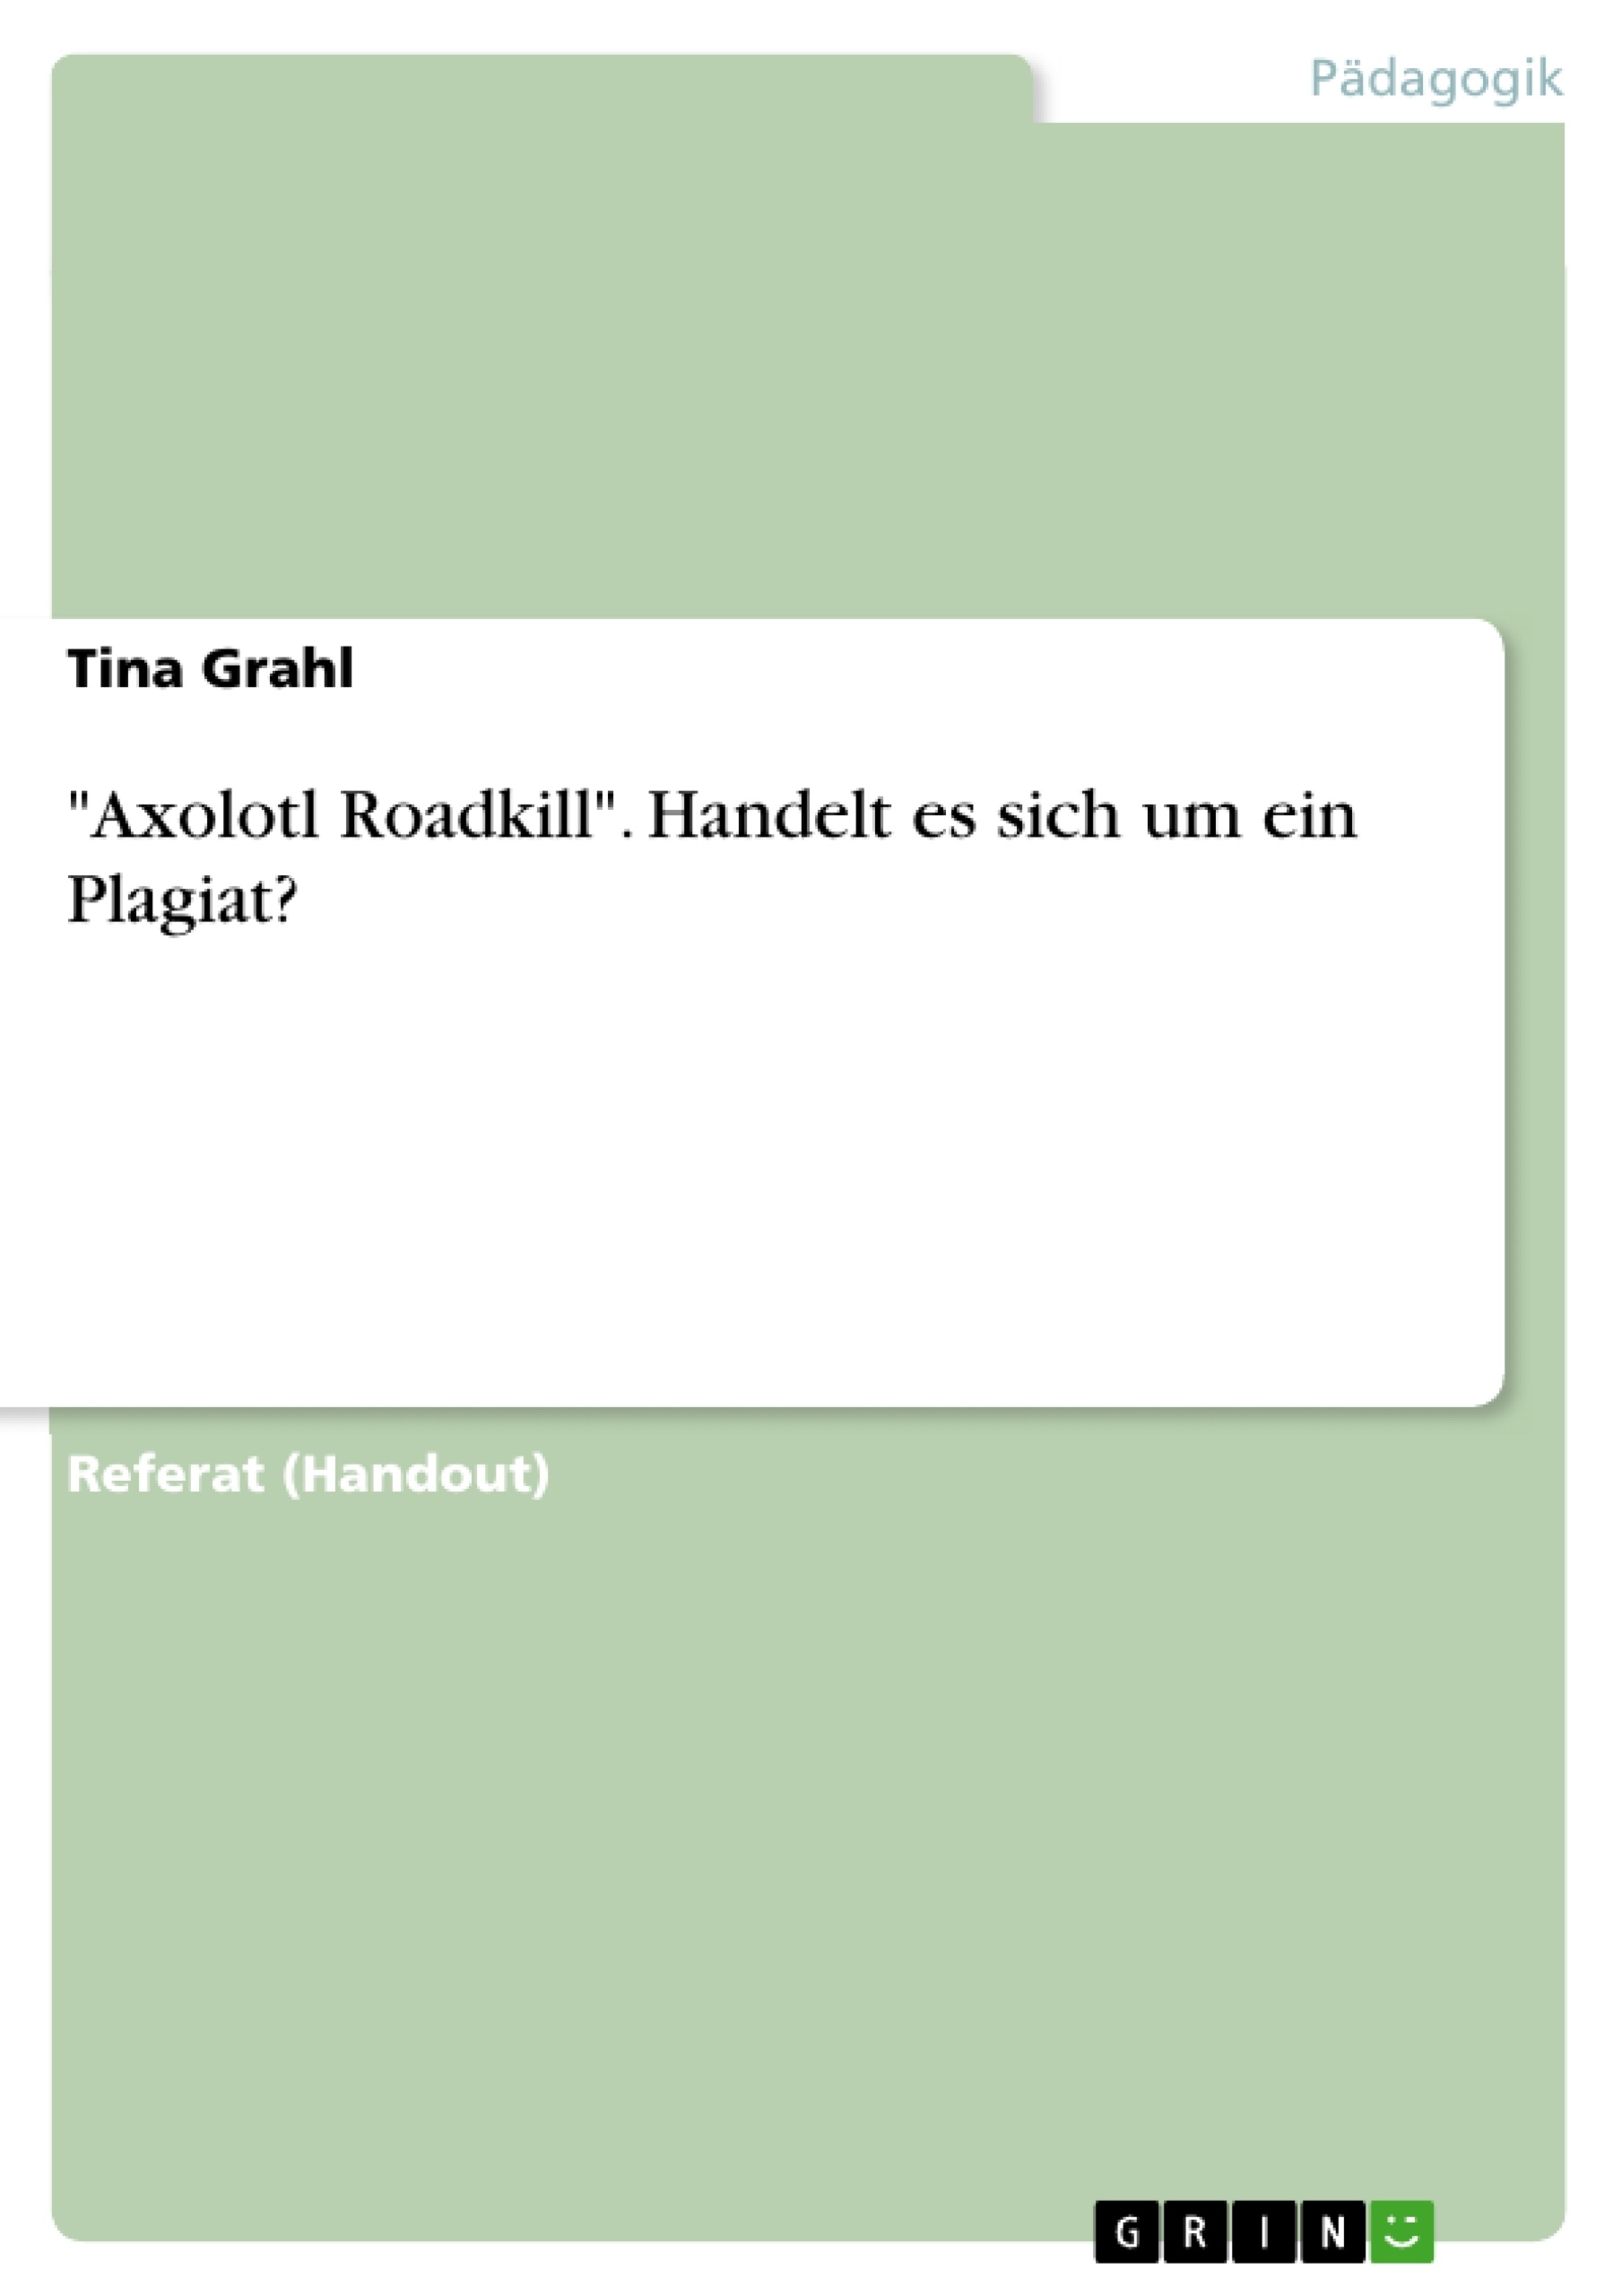 Título: "Axolotl Roadkill". Handelt es sich um ein Plagiat?